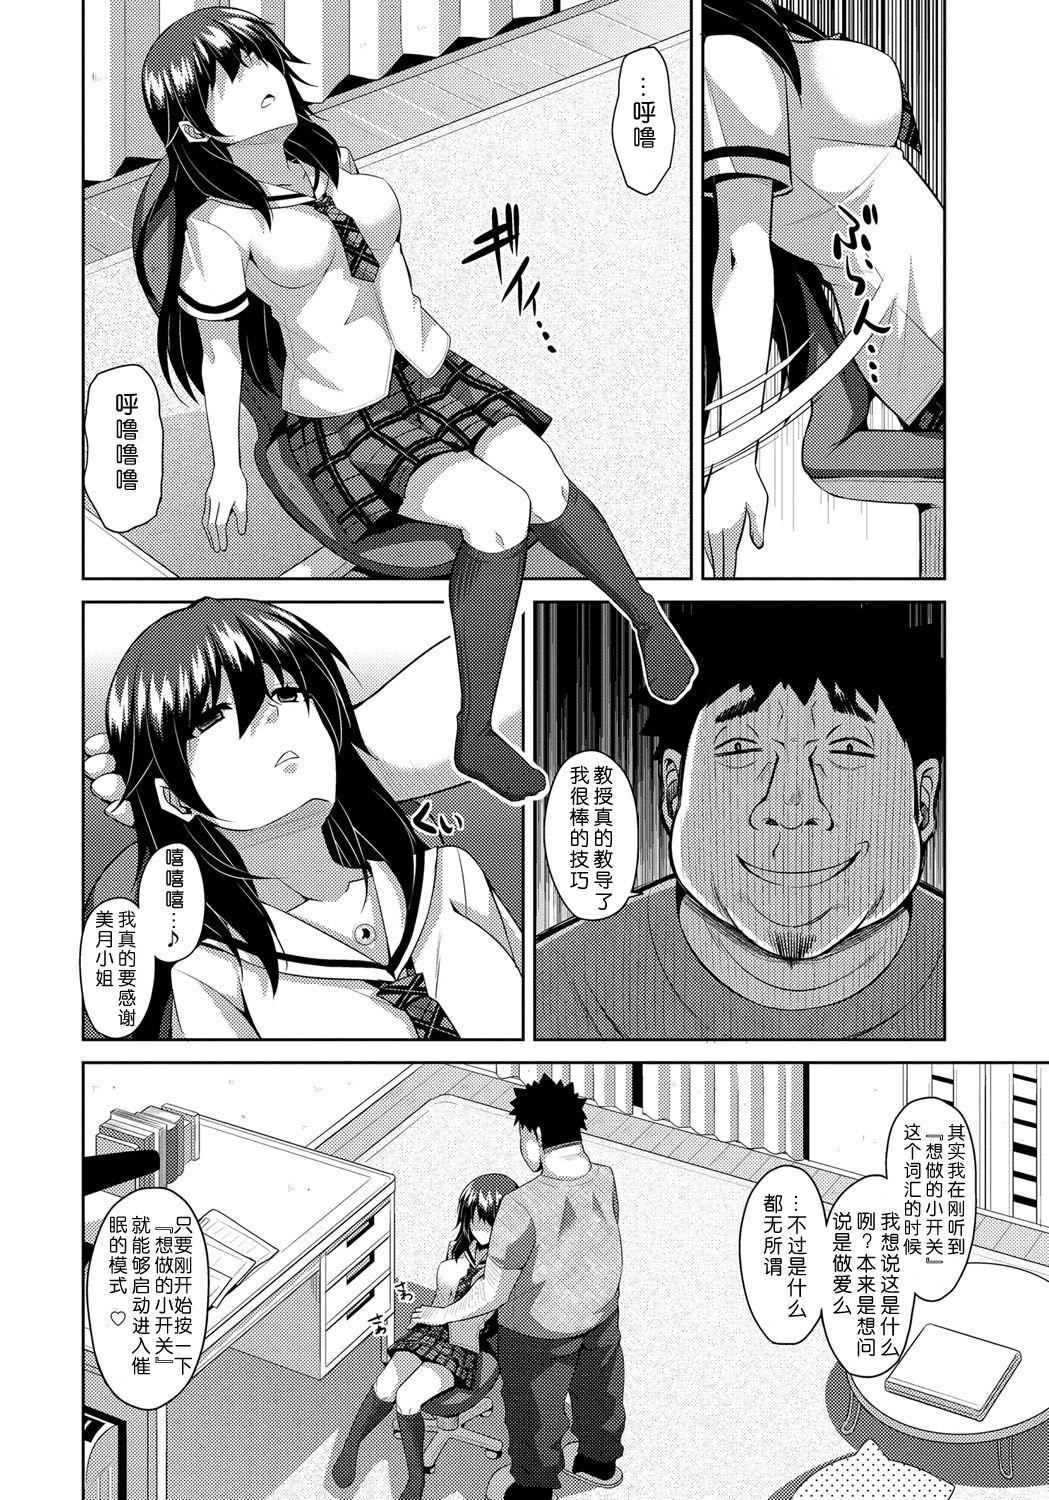 The Yaruki Switch - Aphorodisiac Switch Pornstars - Page 12